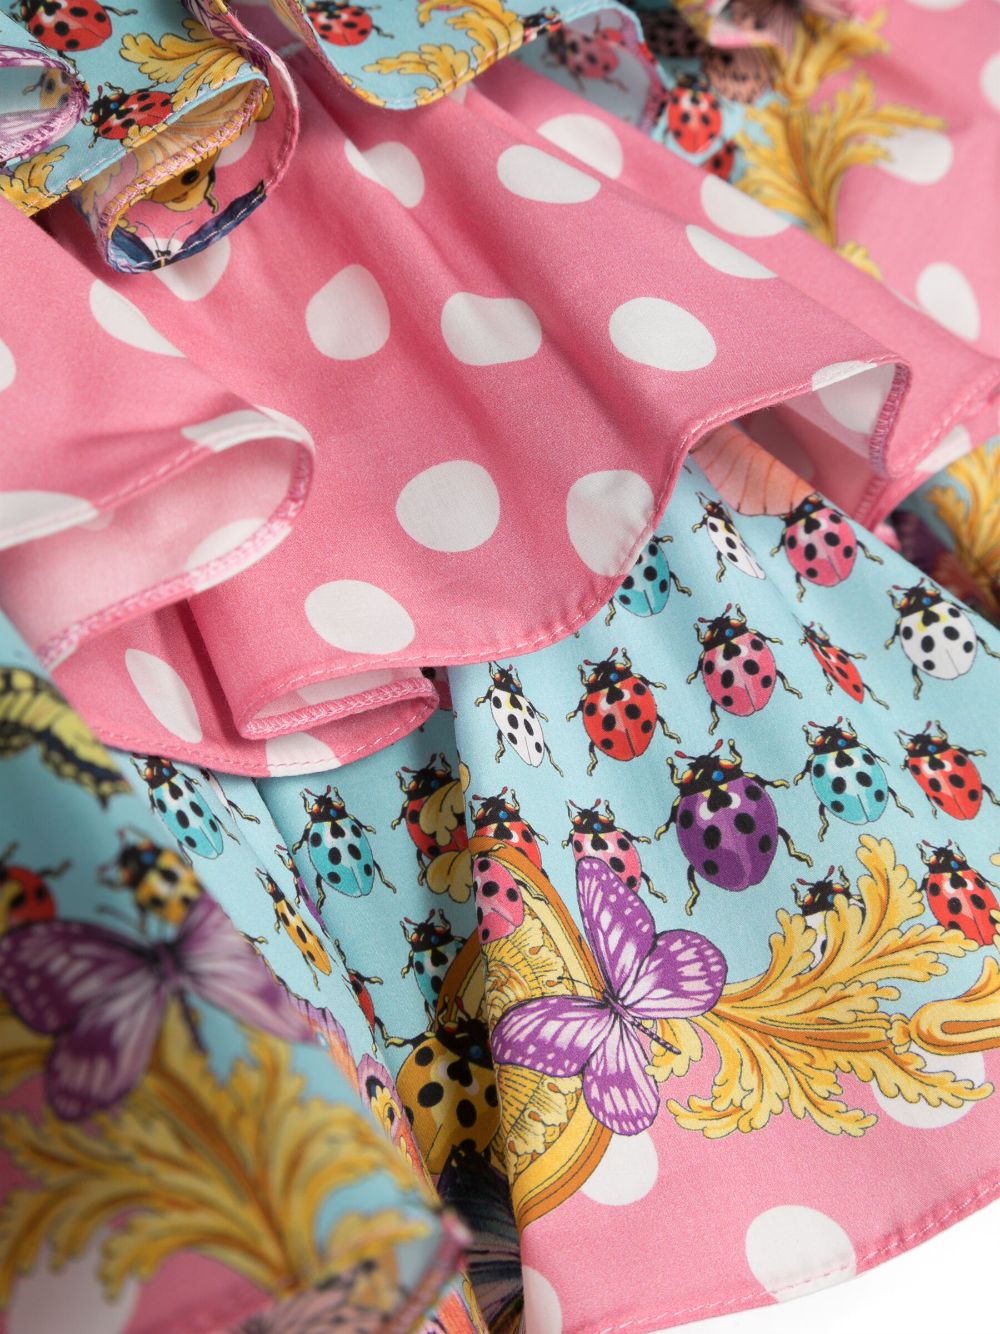 VERSACE KIDS Girls Butterflies Ruffled Skirt Pink/Multicolour - MAISONDEFASHION.COM